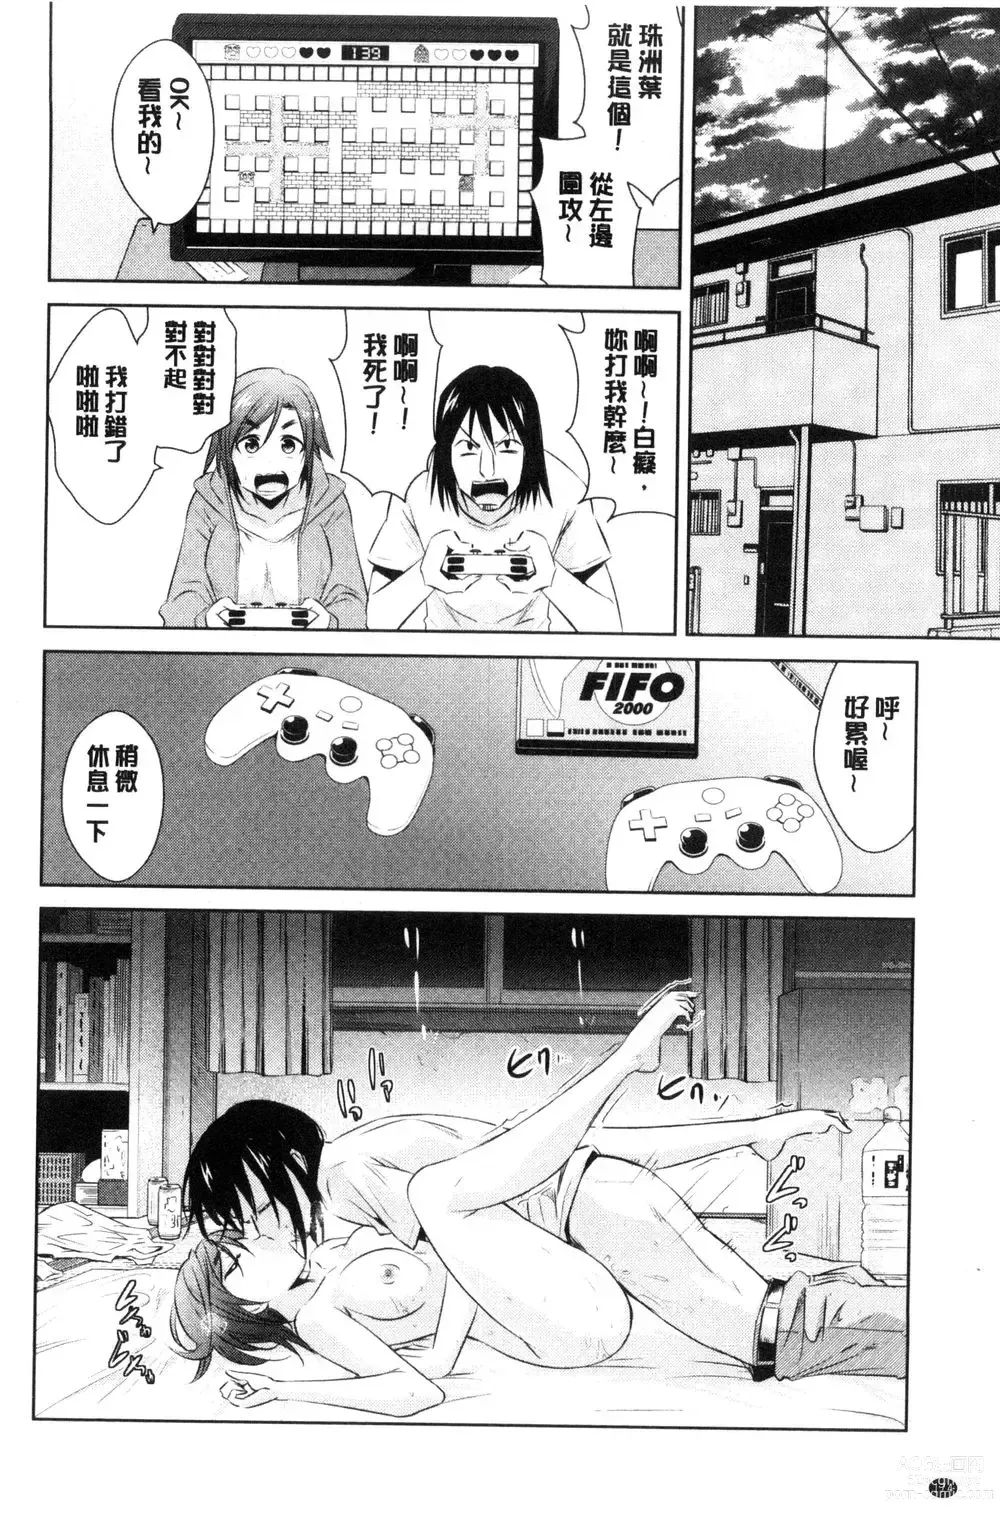 Page 176 of doujinshi ともだちっくす